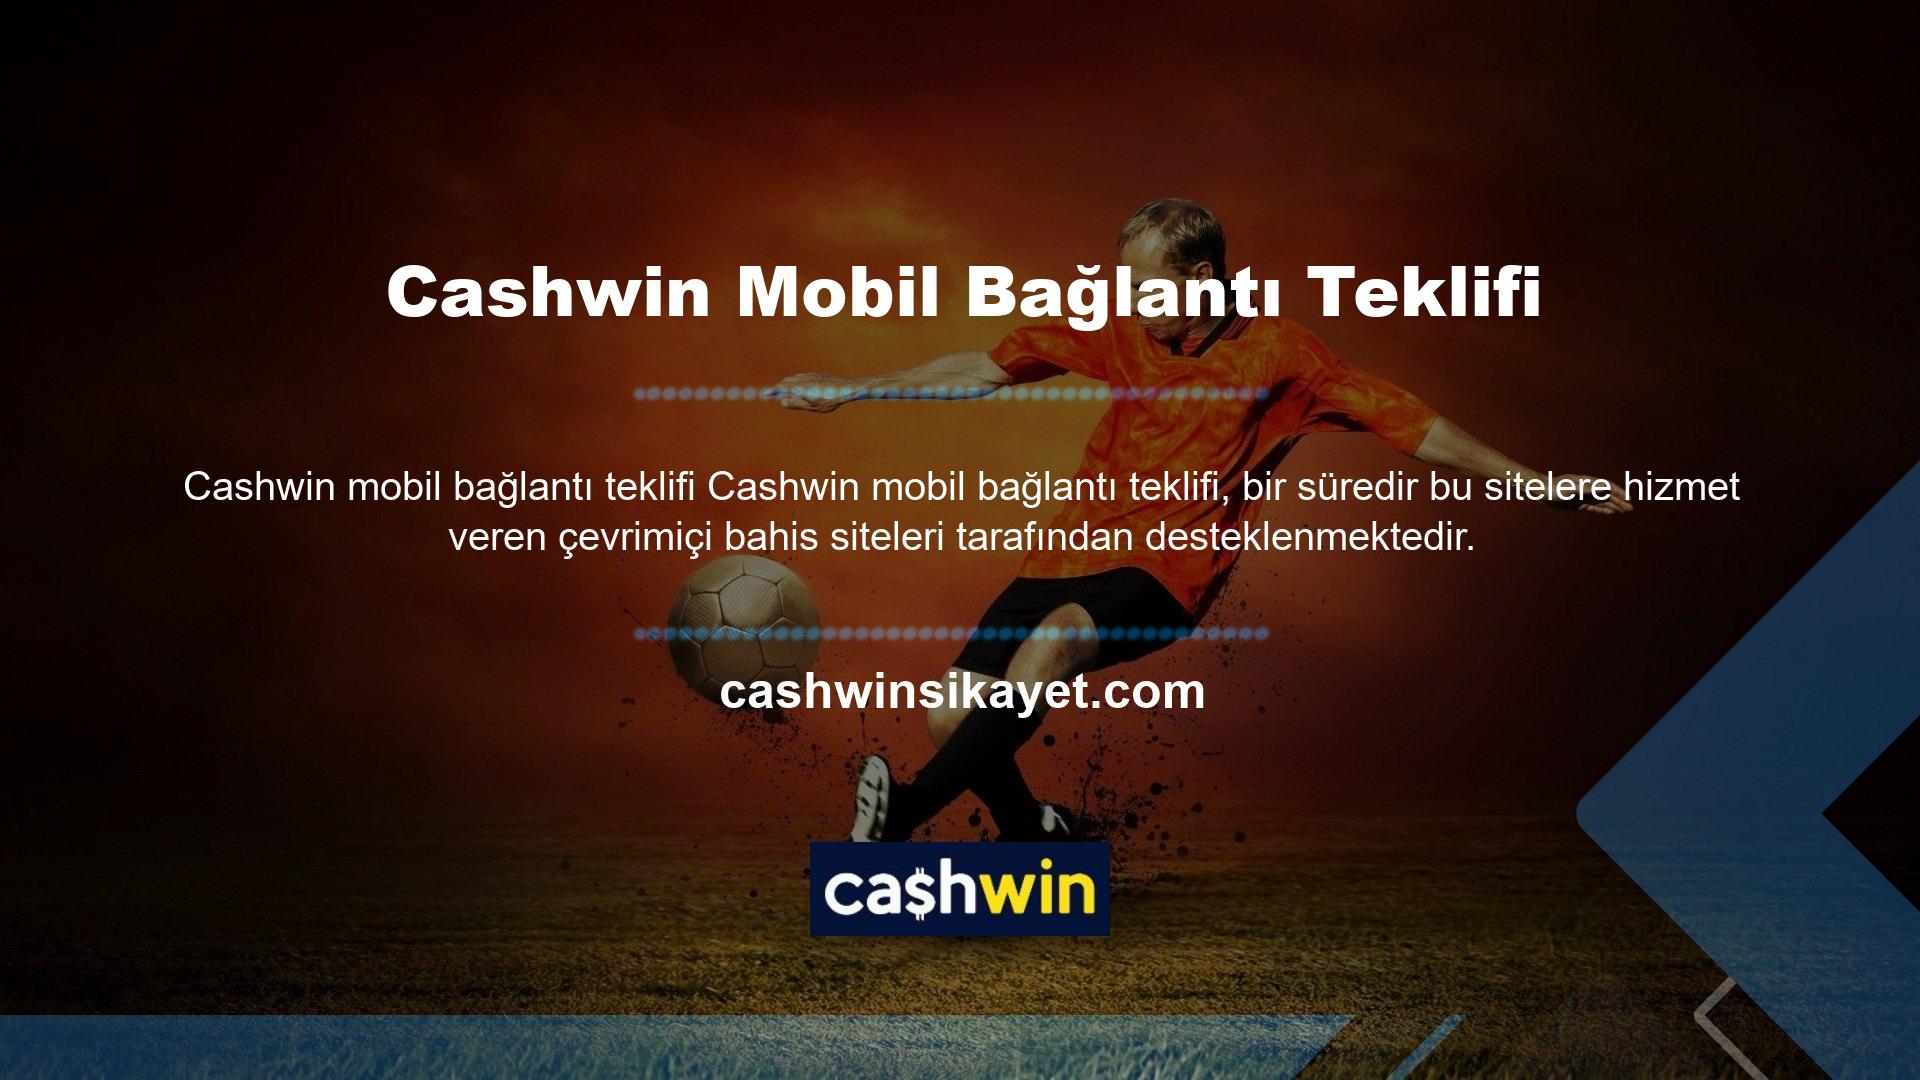 Bu nedenle başta Cashwin mobil hizmetleri olmak üzere birçok bahis sitesi sınırlandırılmakta ve zaman zaman kapatılmaktadır